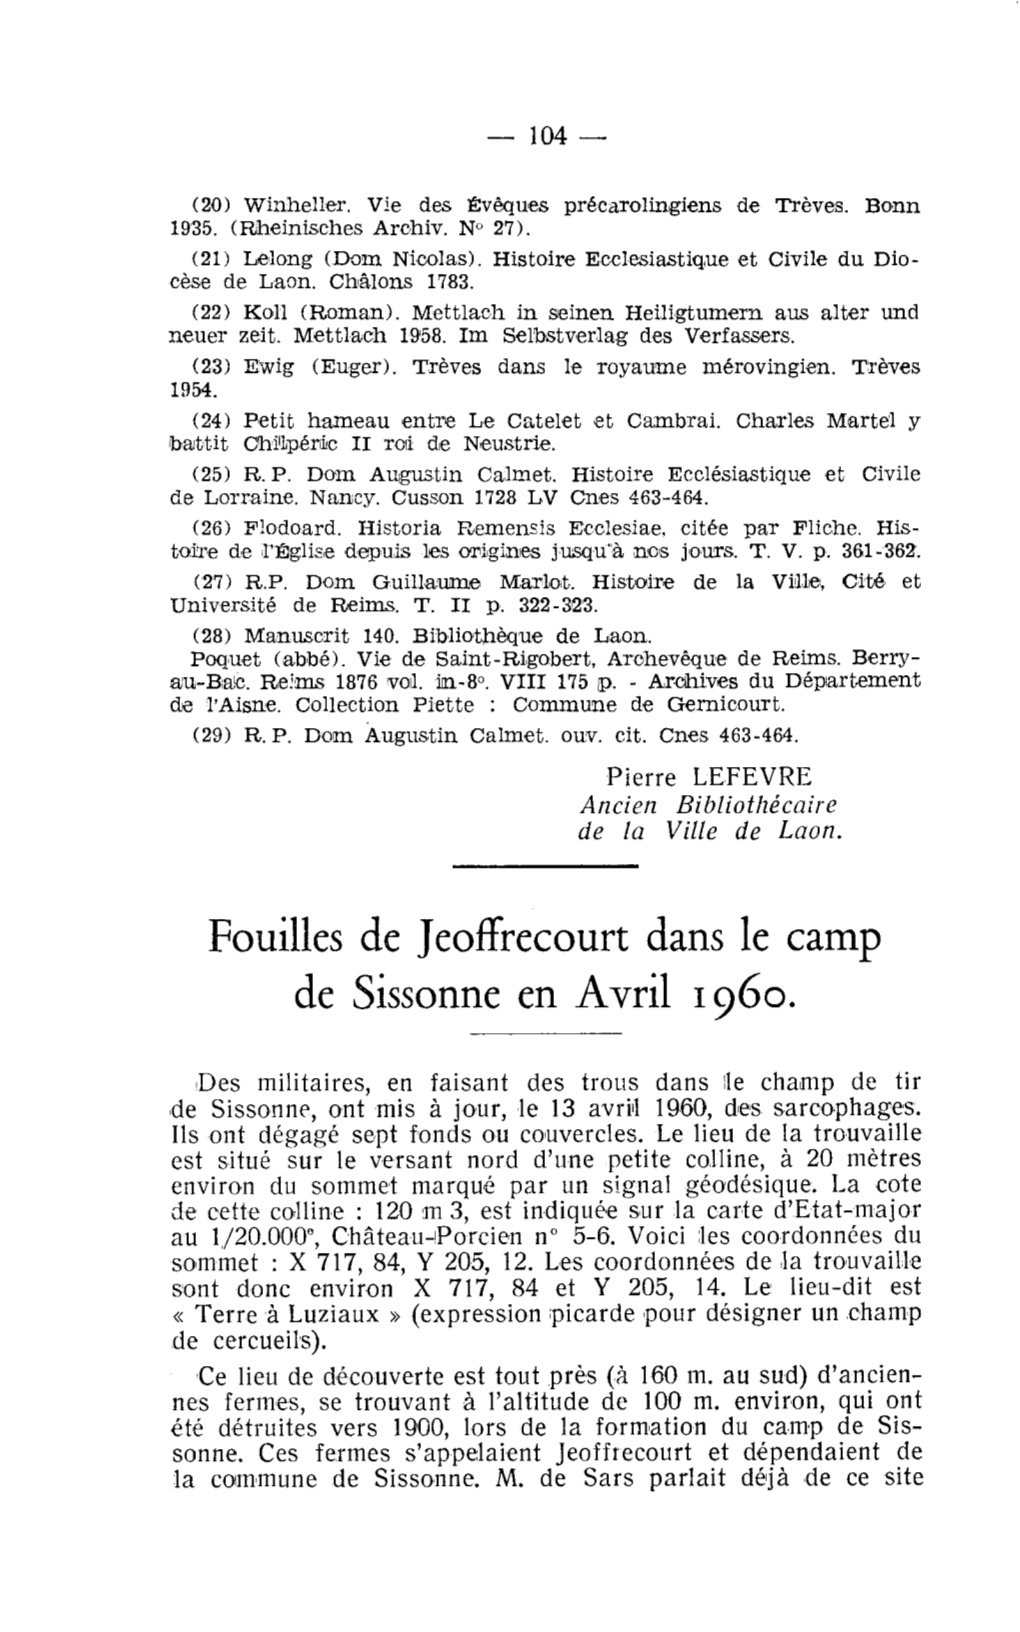 Fouilles De Jeoffrecourt Dans Le Camp De Sissonne En Avril 1960